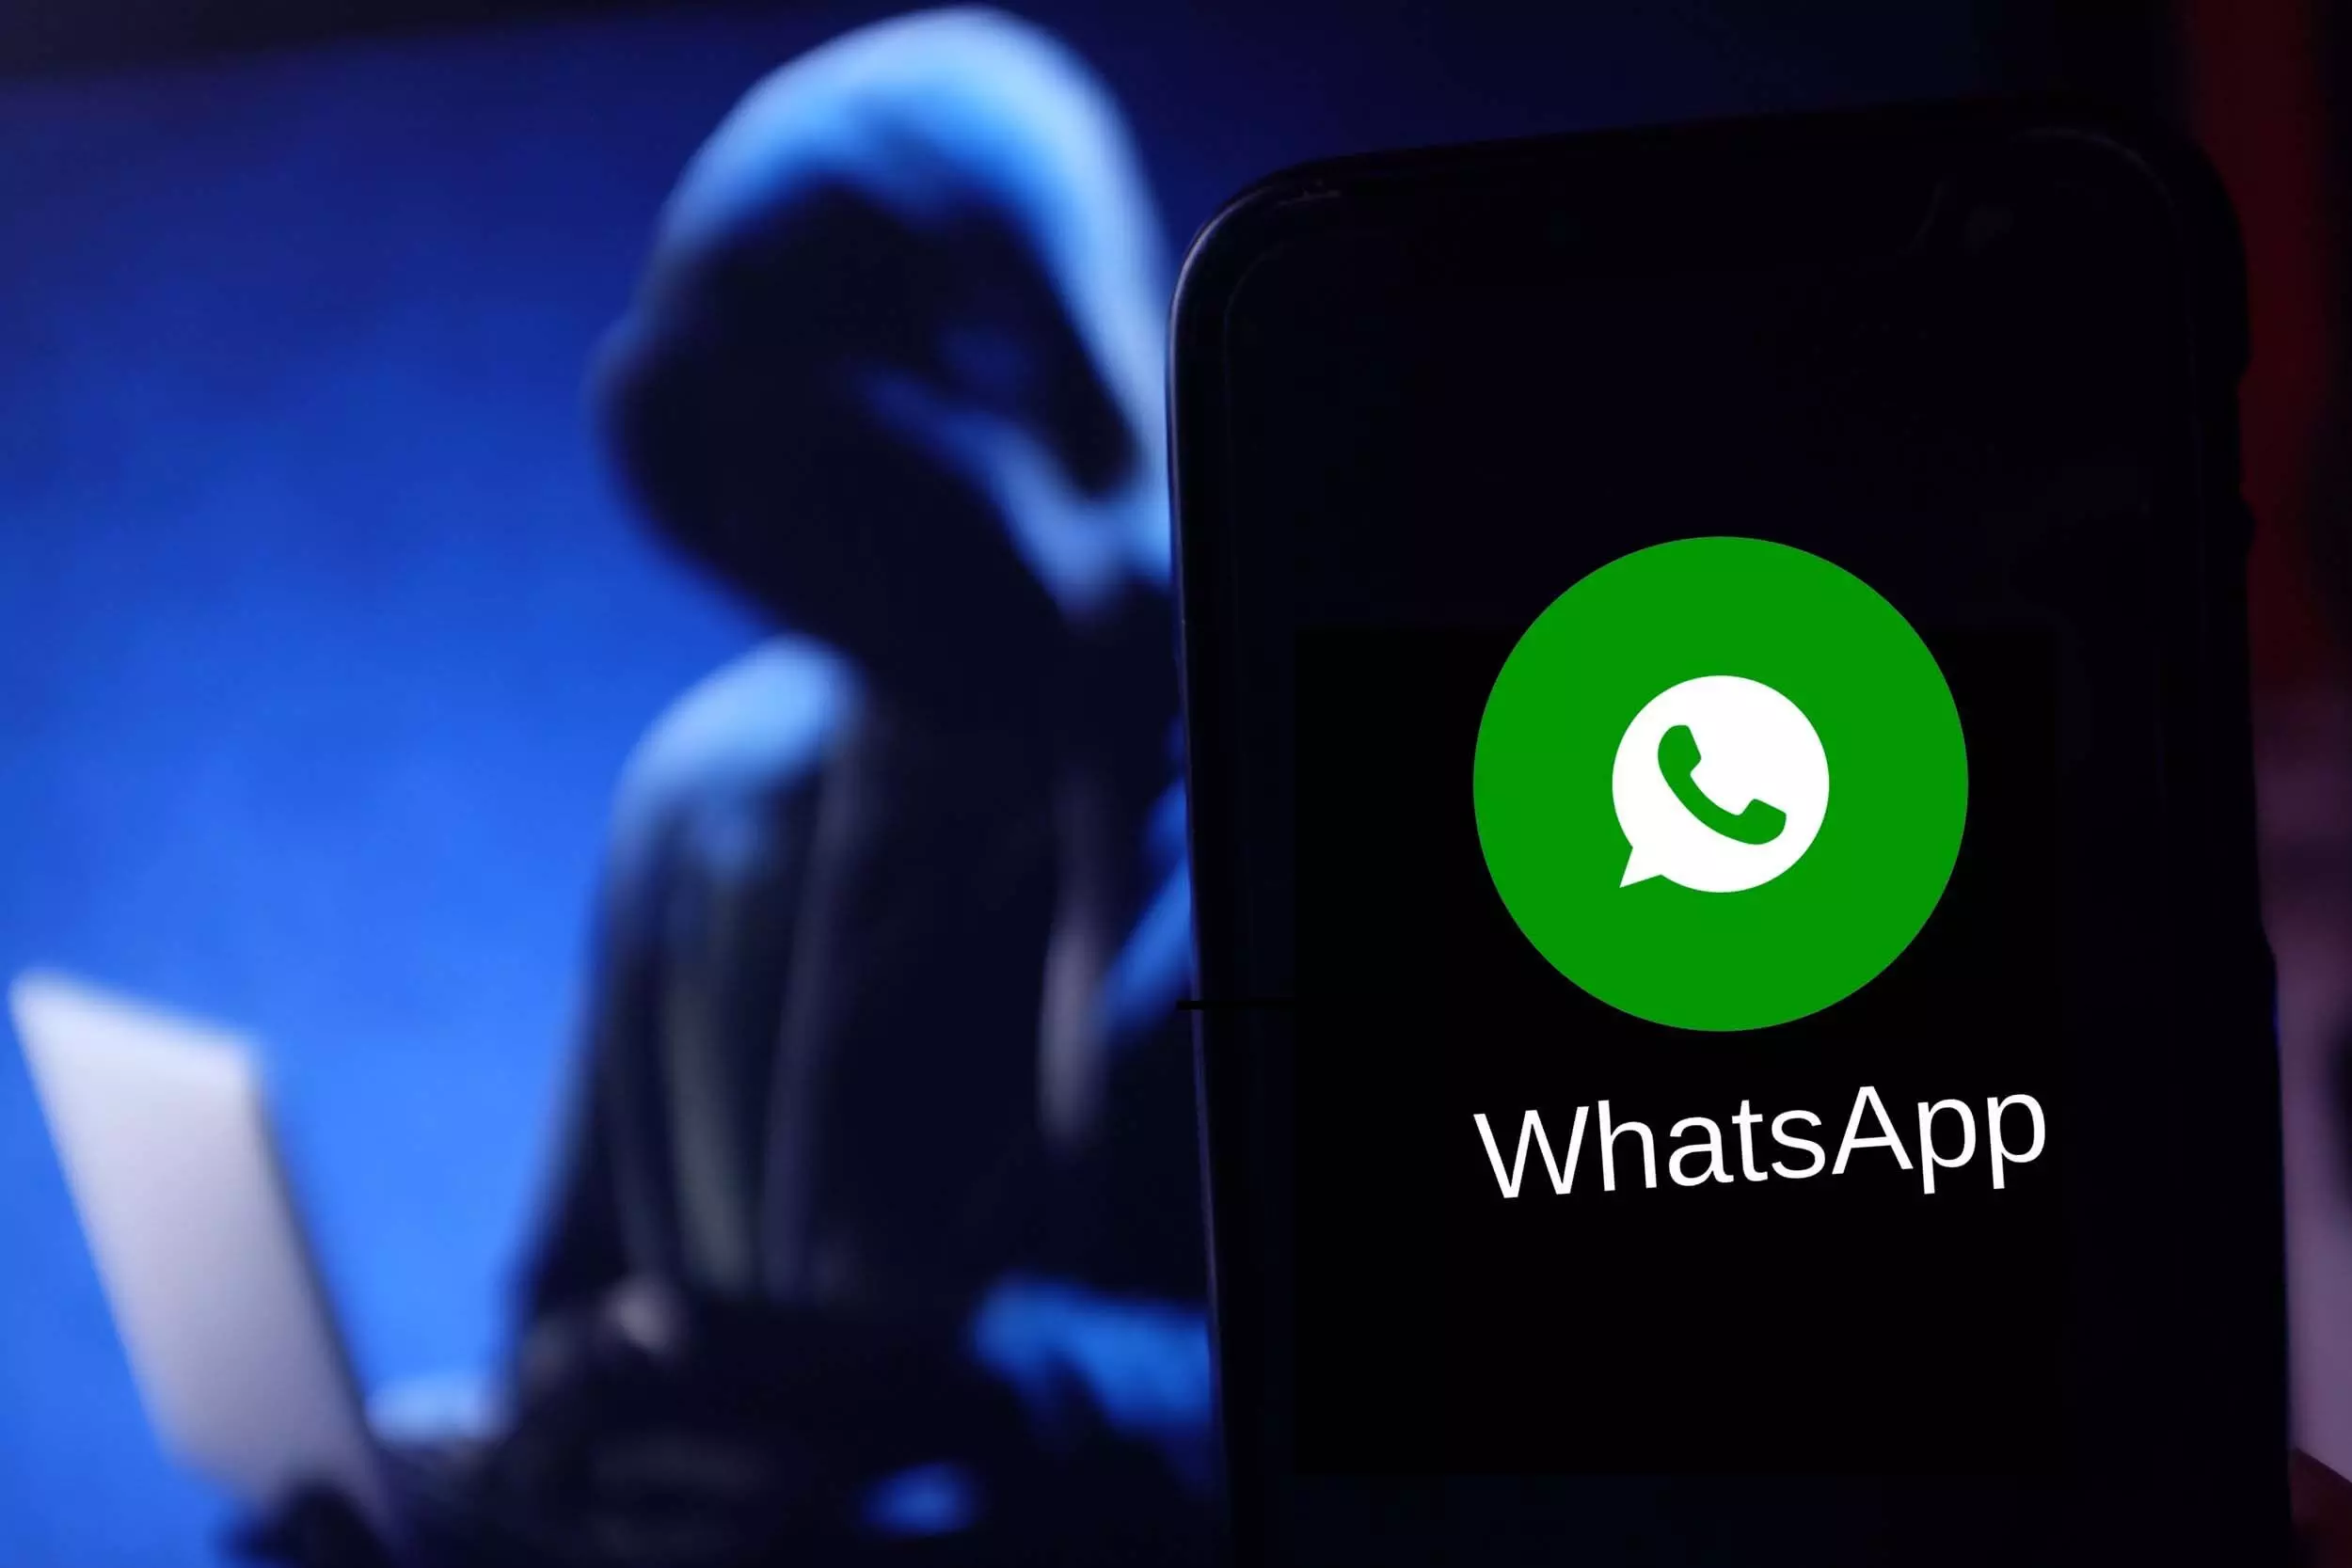 WhatsApp का नया धांसू फीचर साइबर ठगी से बचाएगा, जानें डिटेल्स